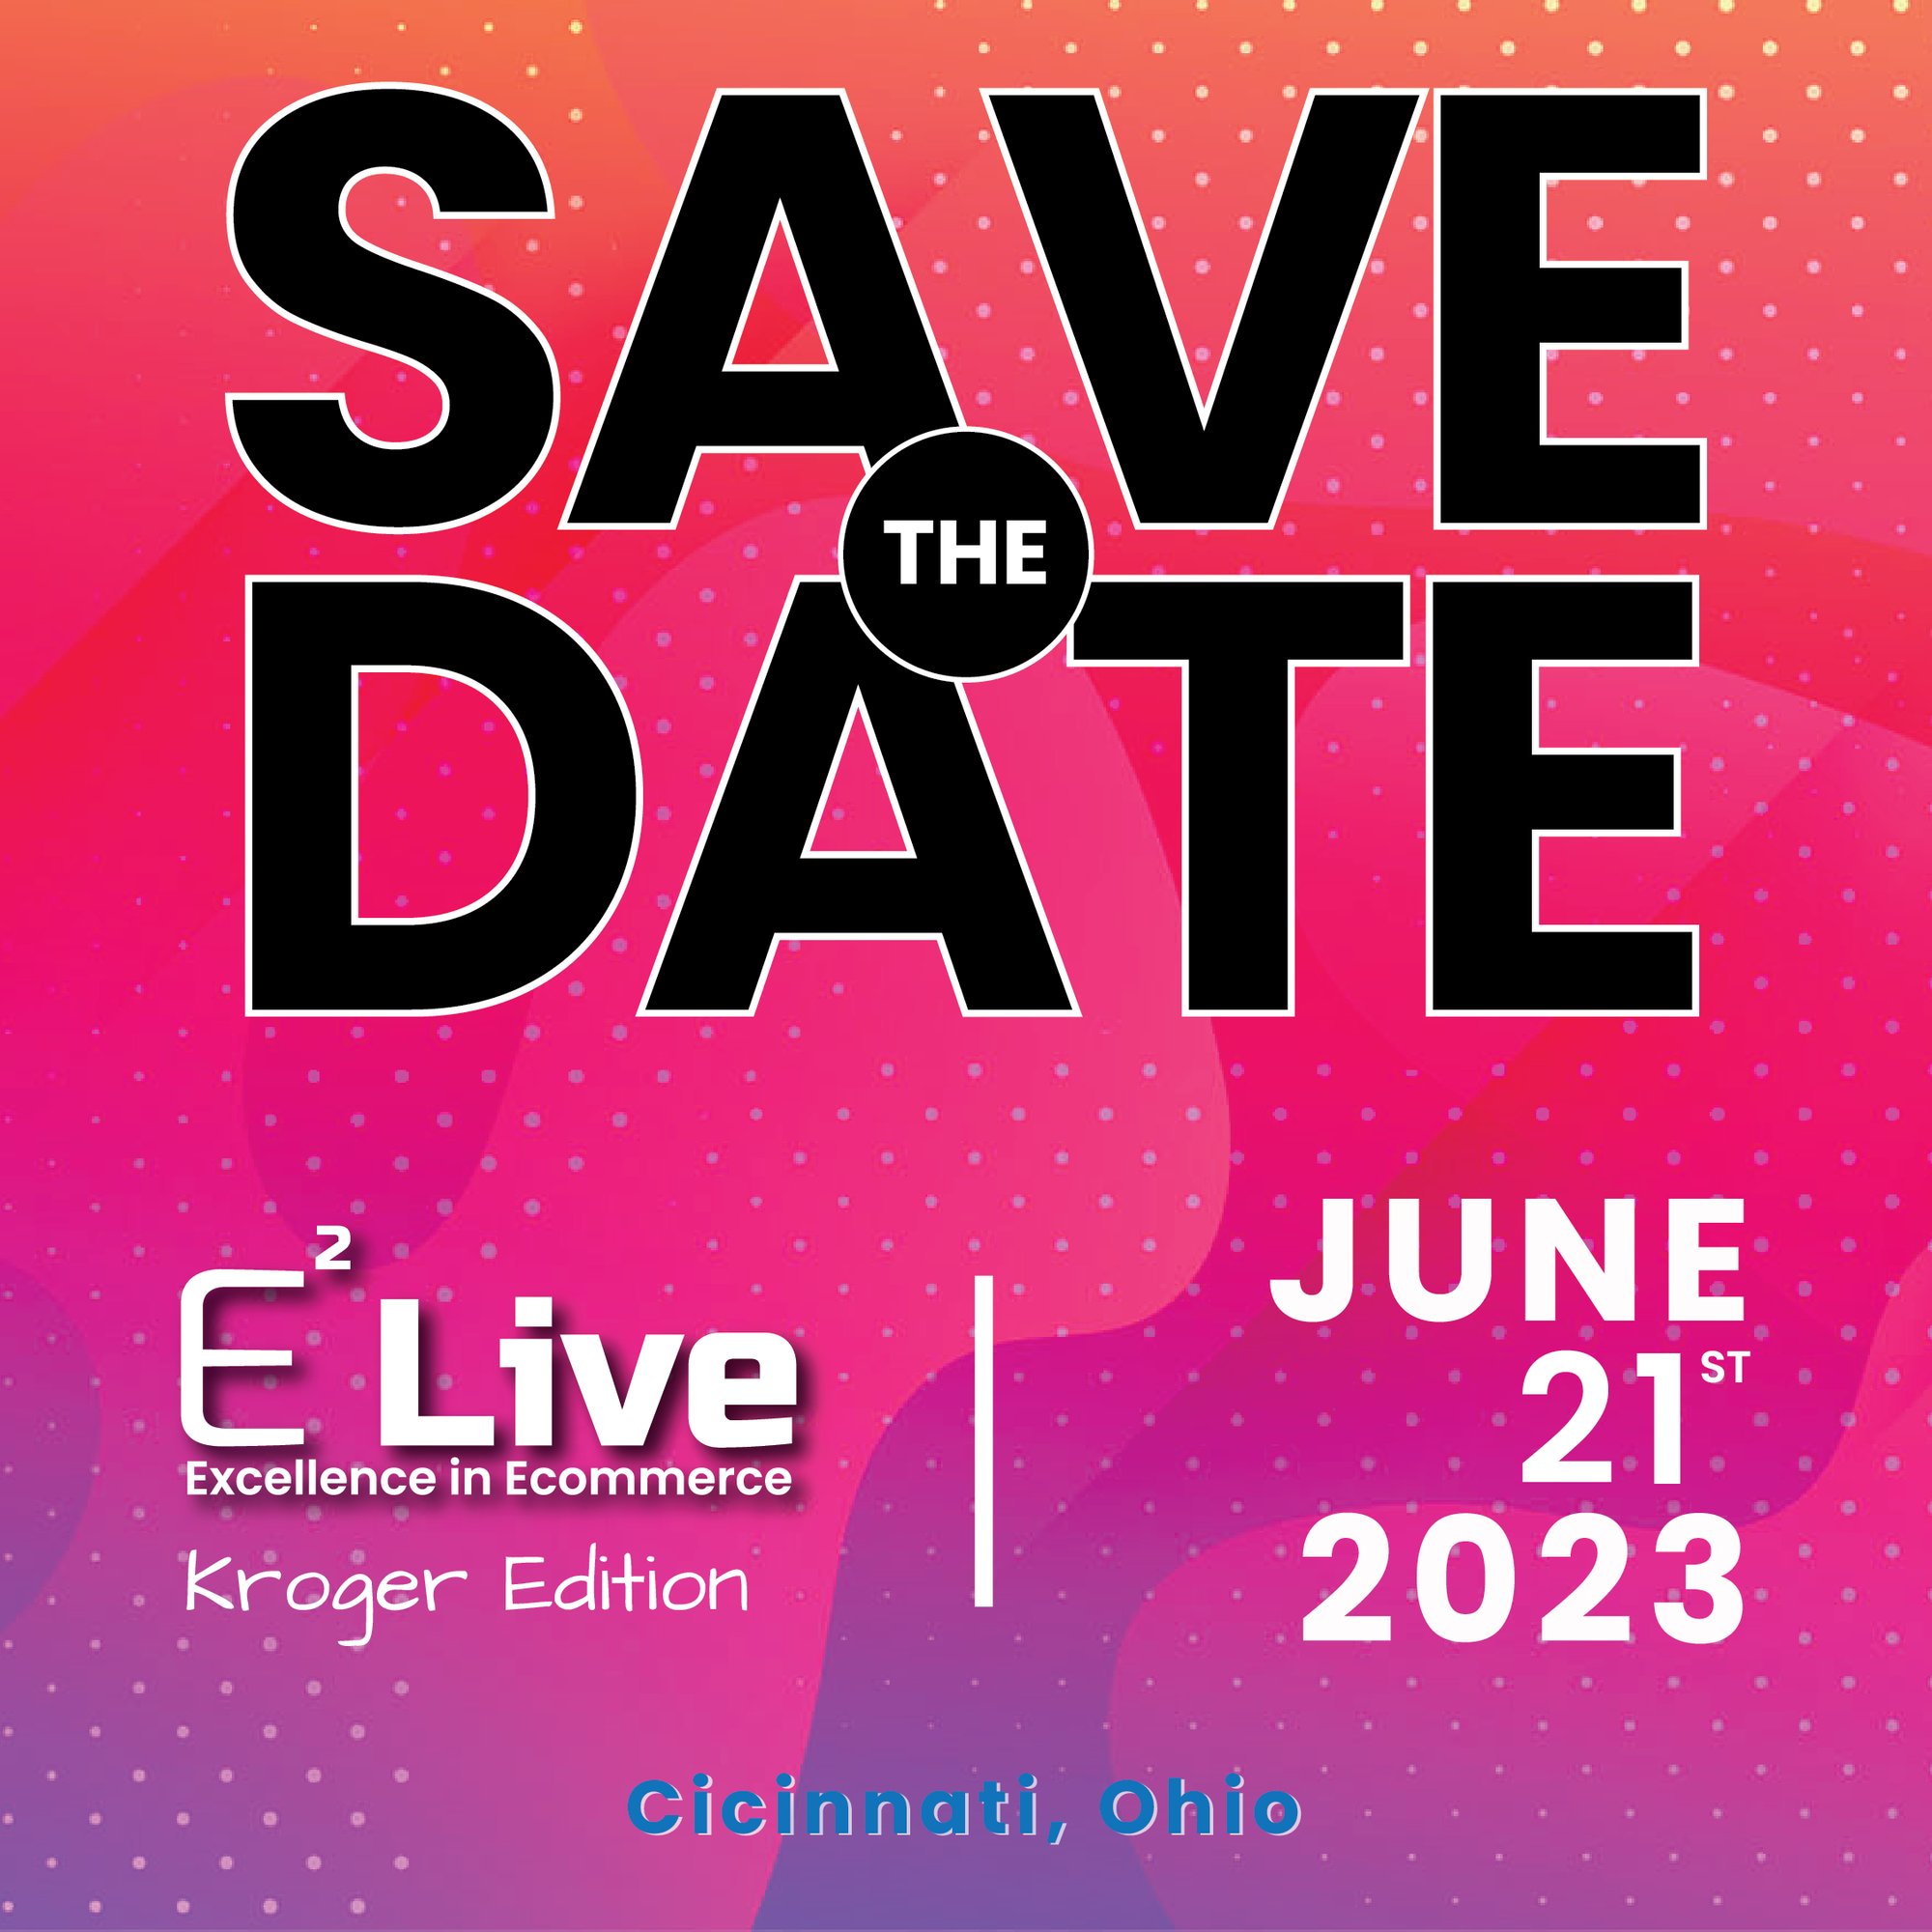 E2 Live Cincinnati - Save The Date